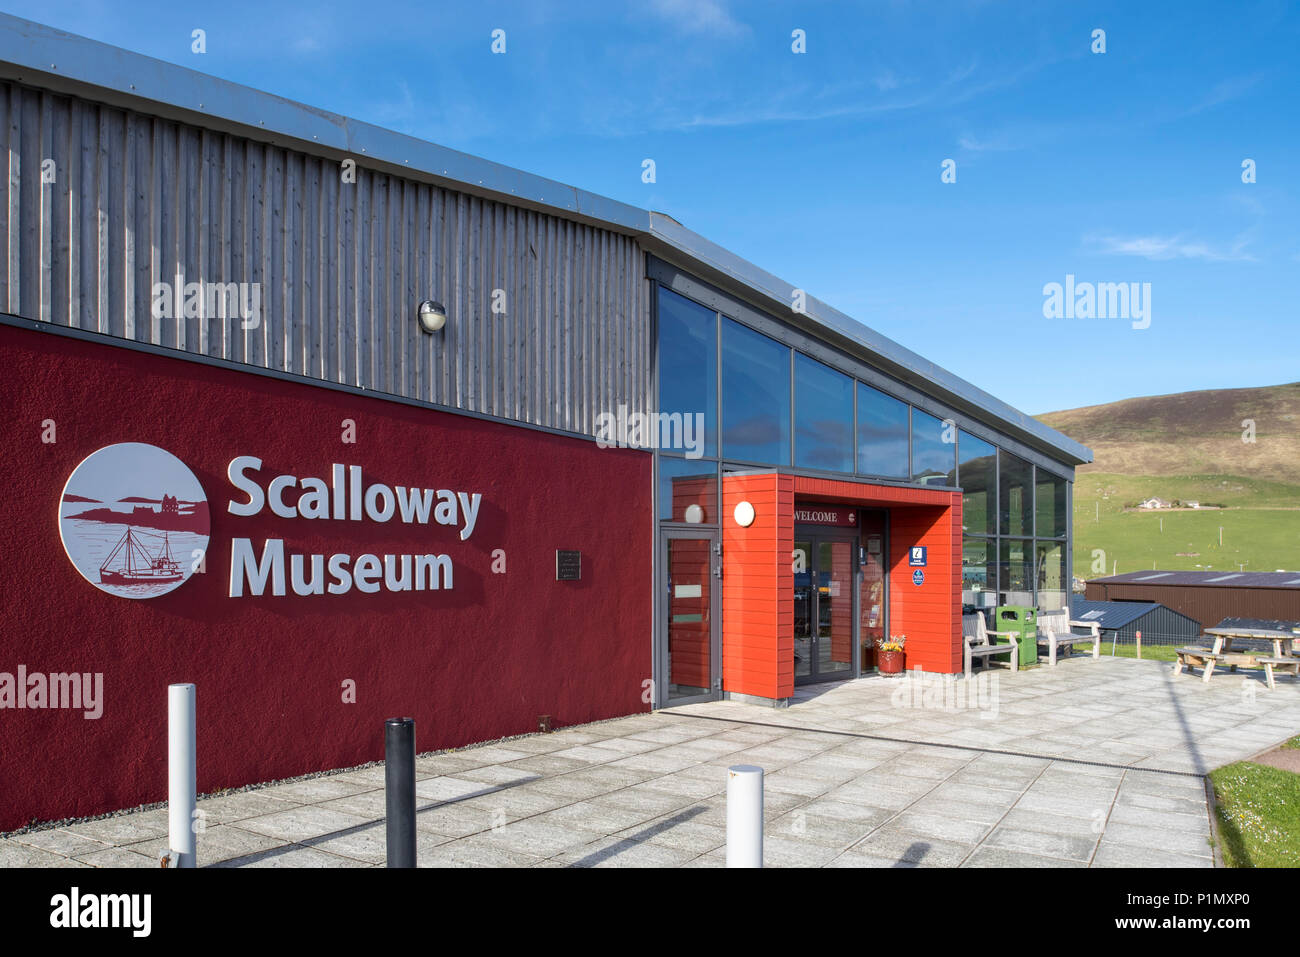 Entrée du musée Scalloway, Shetland, Scotland, UK Banque D'Images